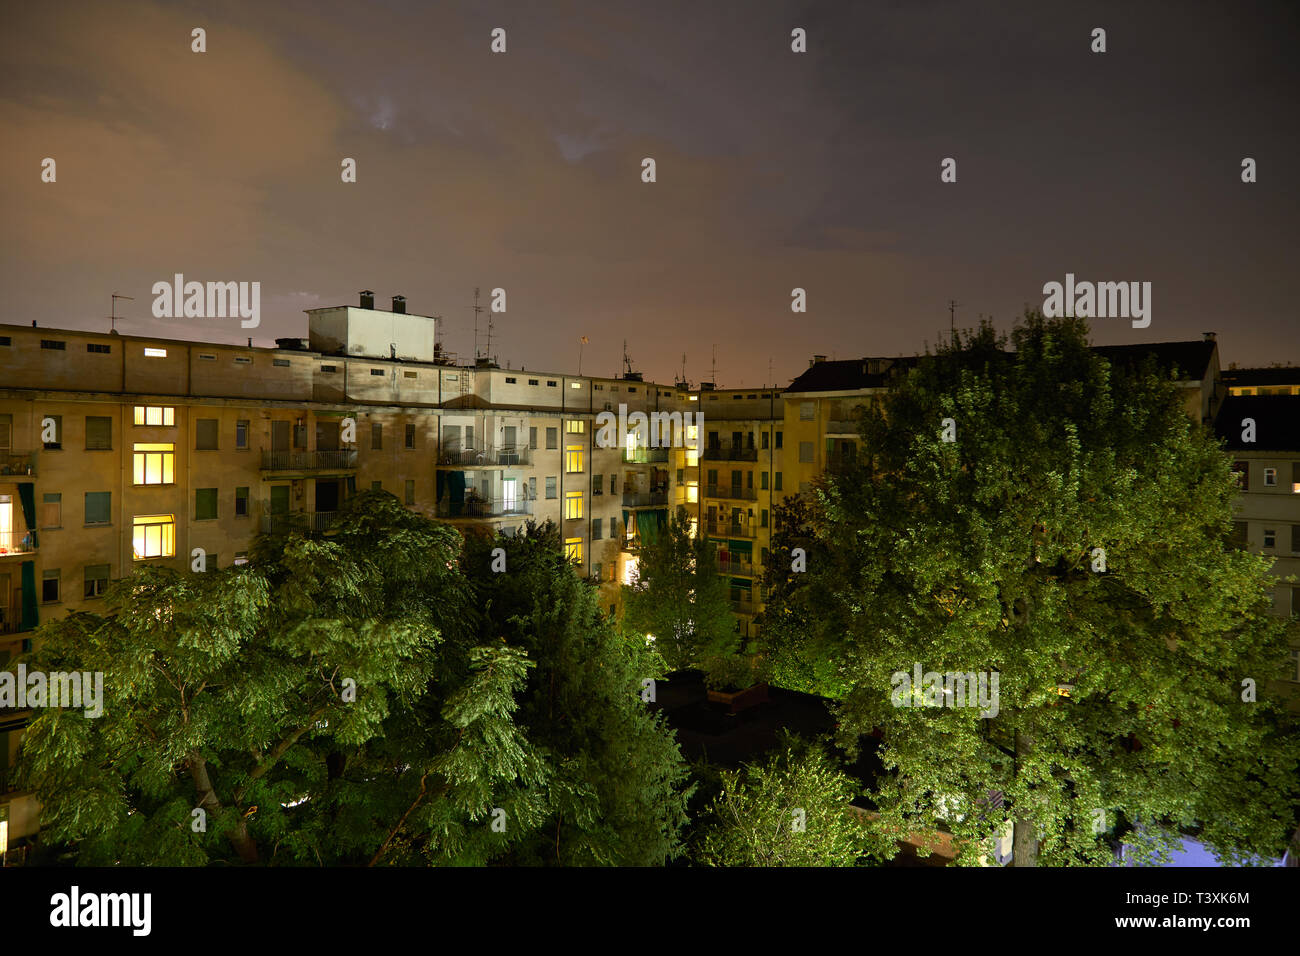 Gebäude und grüne Bäume bei Nacht, beleuchtete bewölkter Himmel Stockfoto